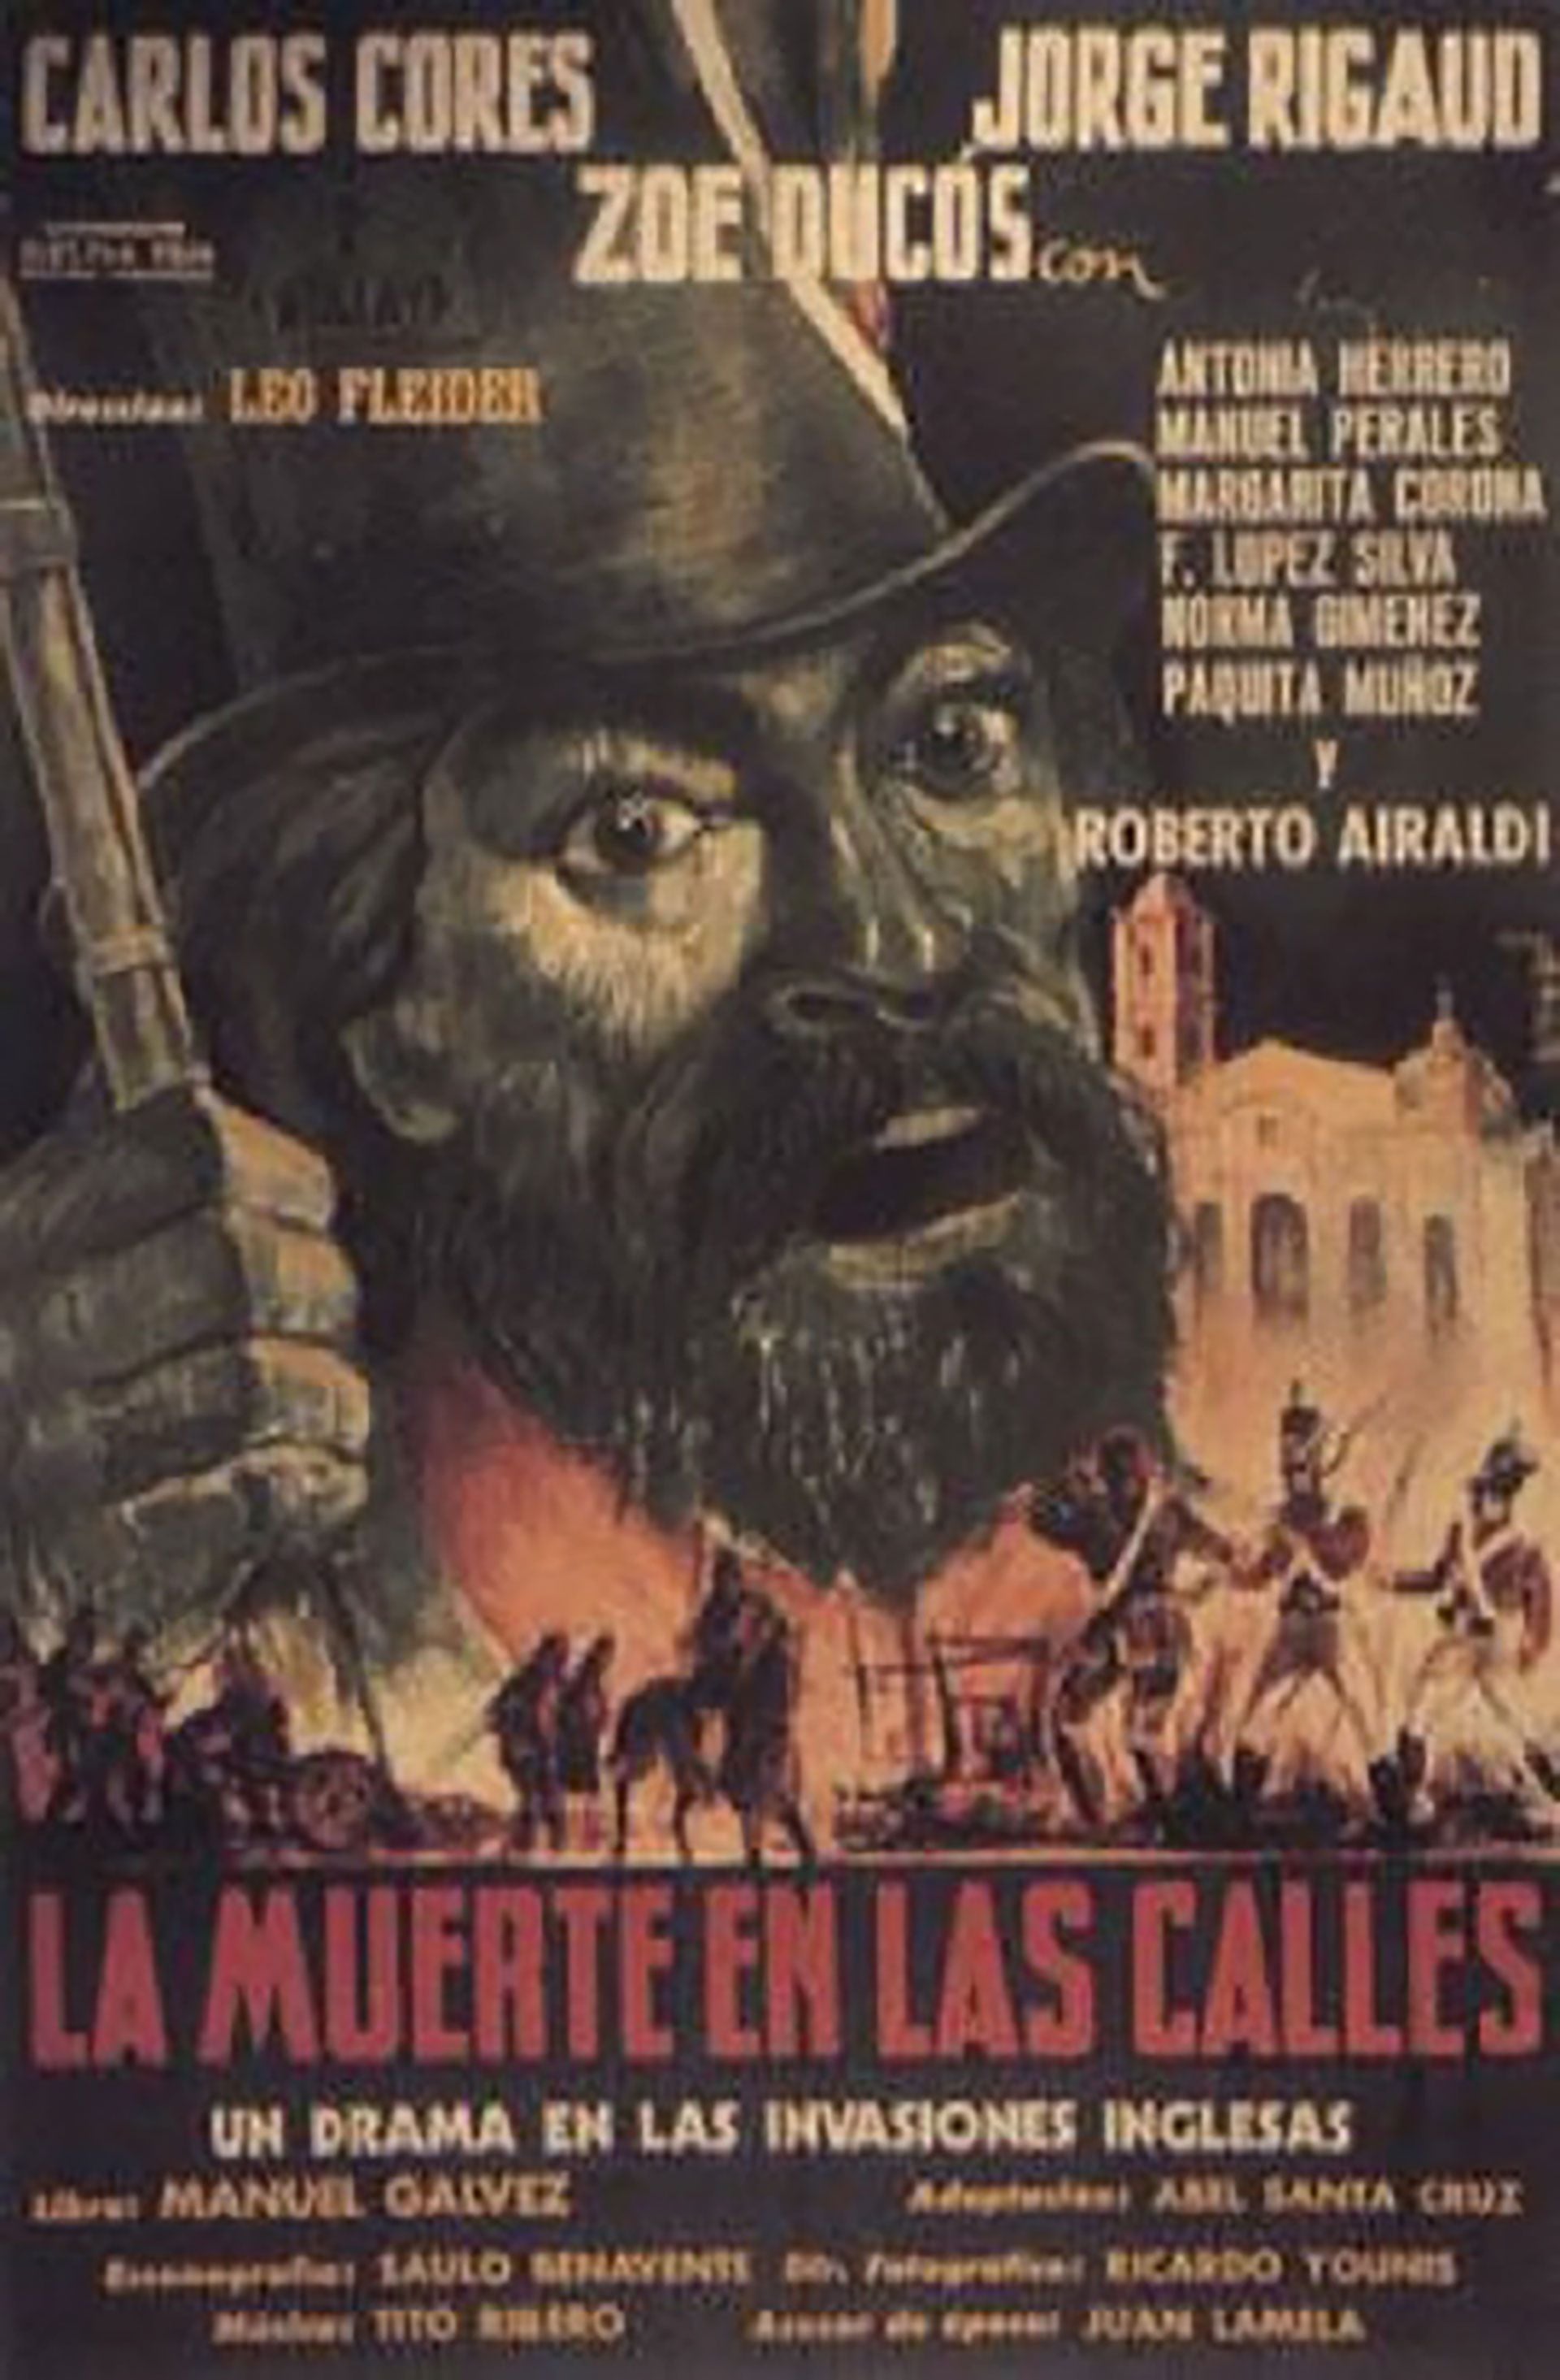 Afiche de la olvidada película "La Muerte en las calles", dirigida por Leo Fleider y con guion de Abel Santa Cruz, en base a la novela de Manuel Gálvez, de 1952